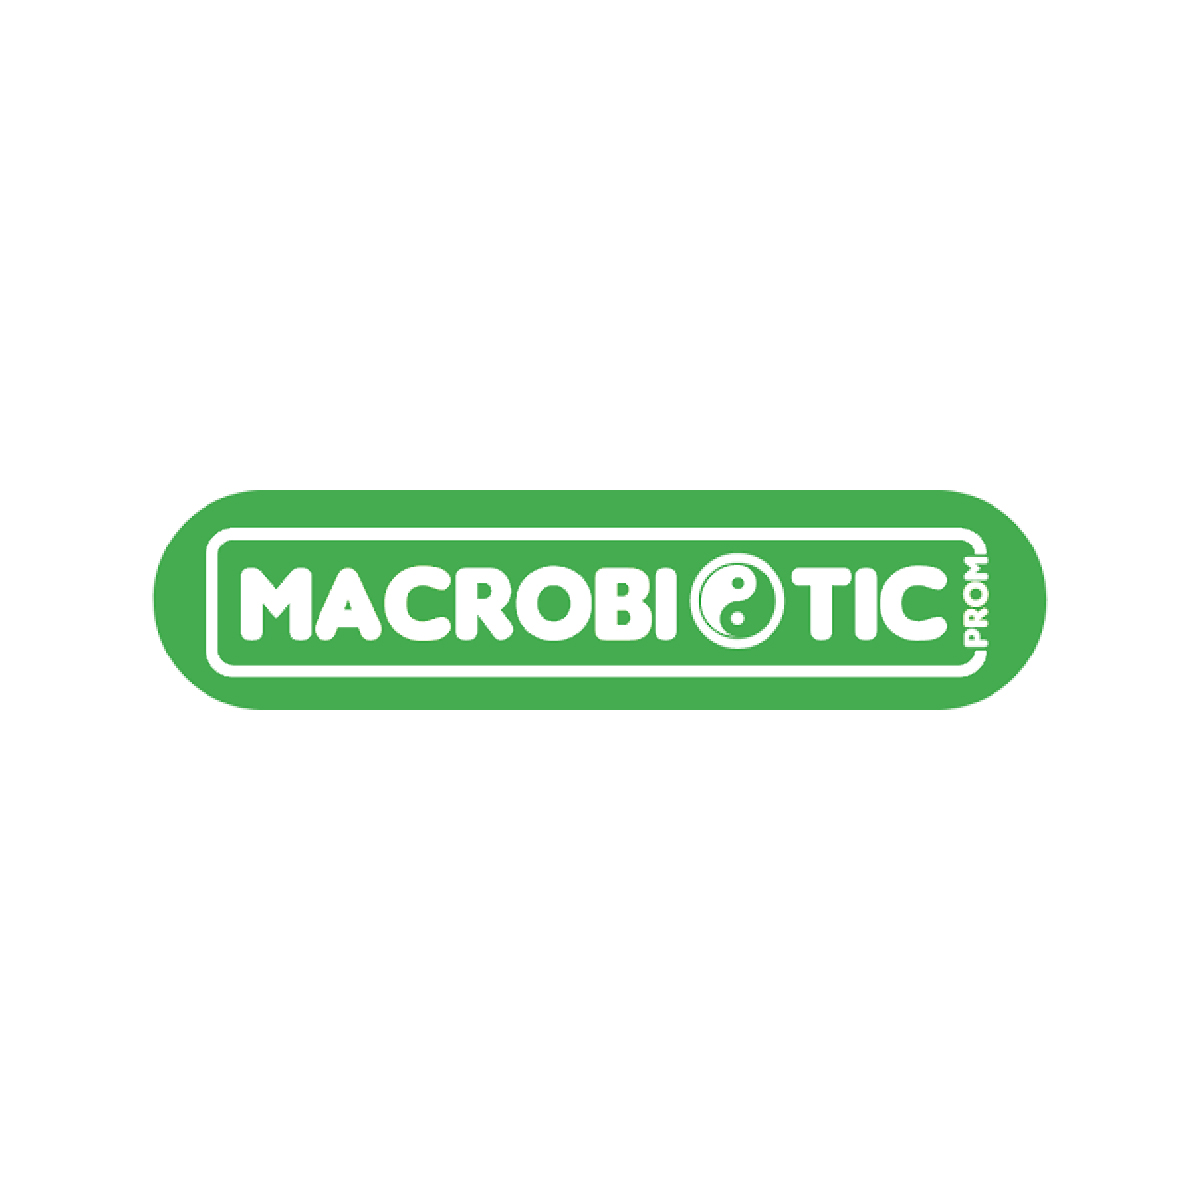 Makrobiotika